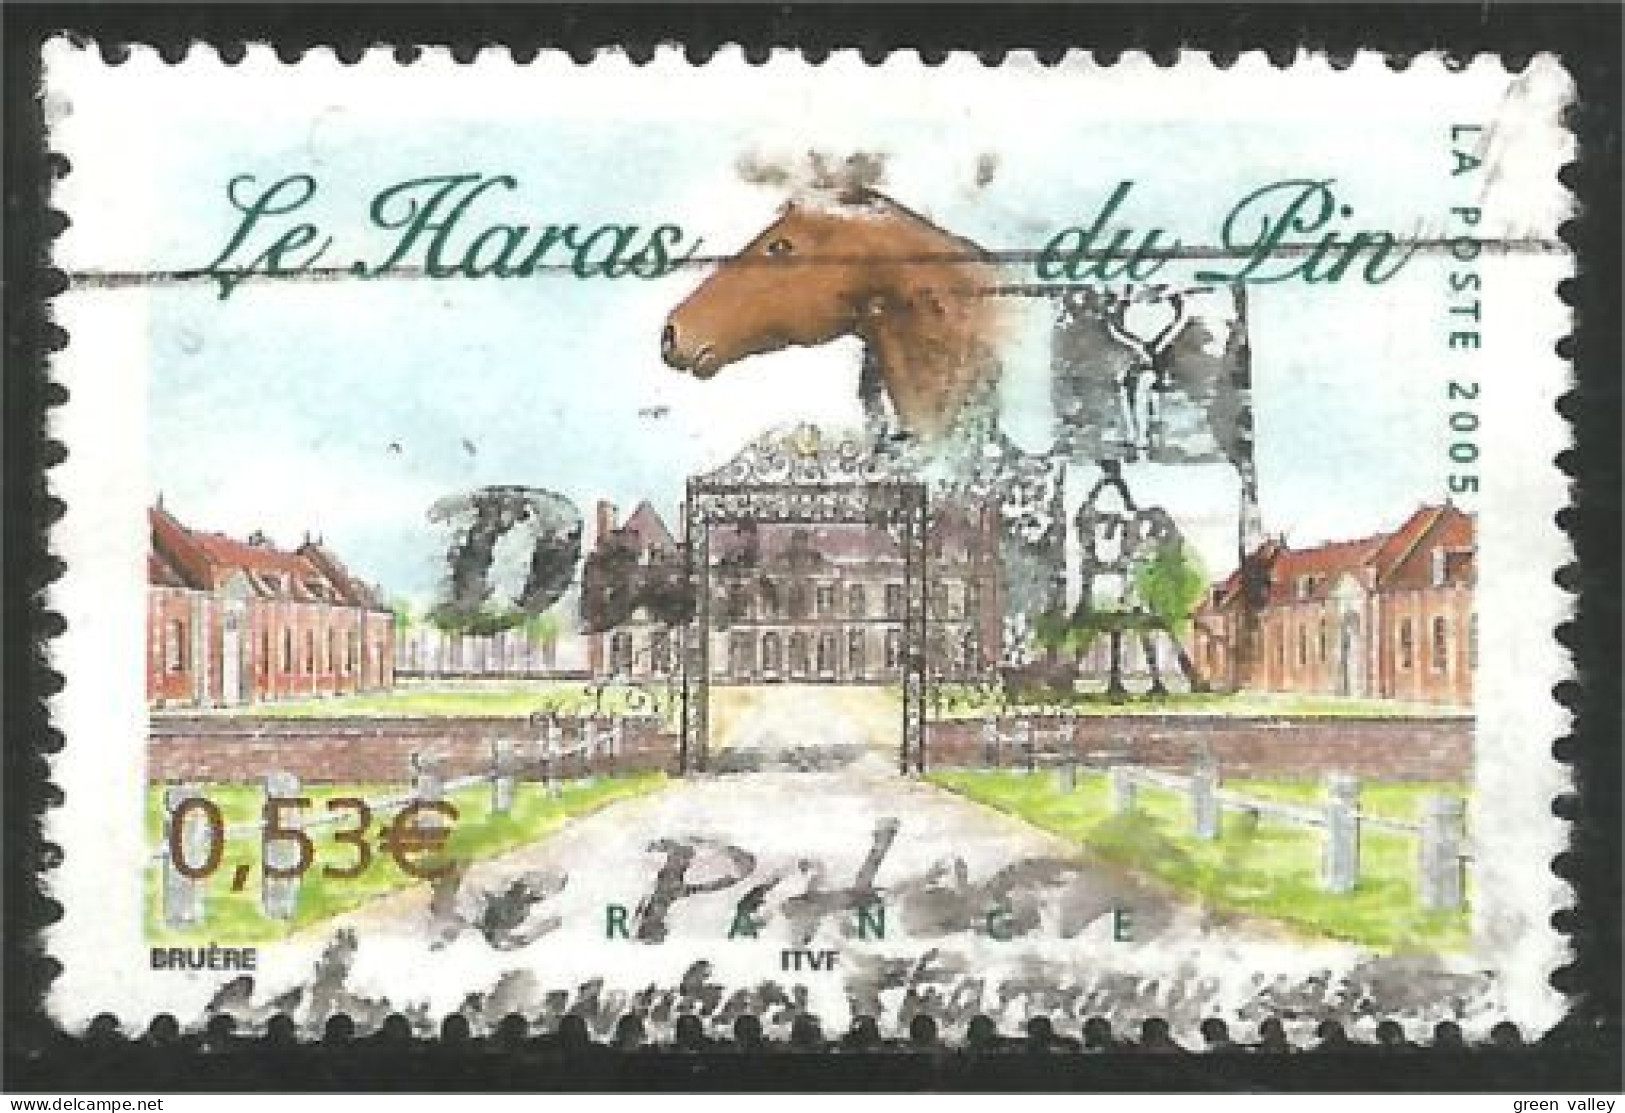 331eu-203 France Haras Du Pin Horse Cheval Pferd Caballo Paard - Horses